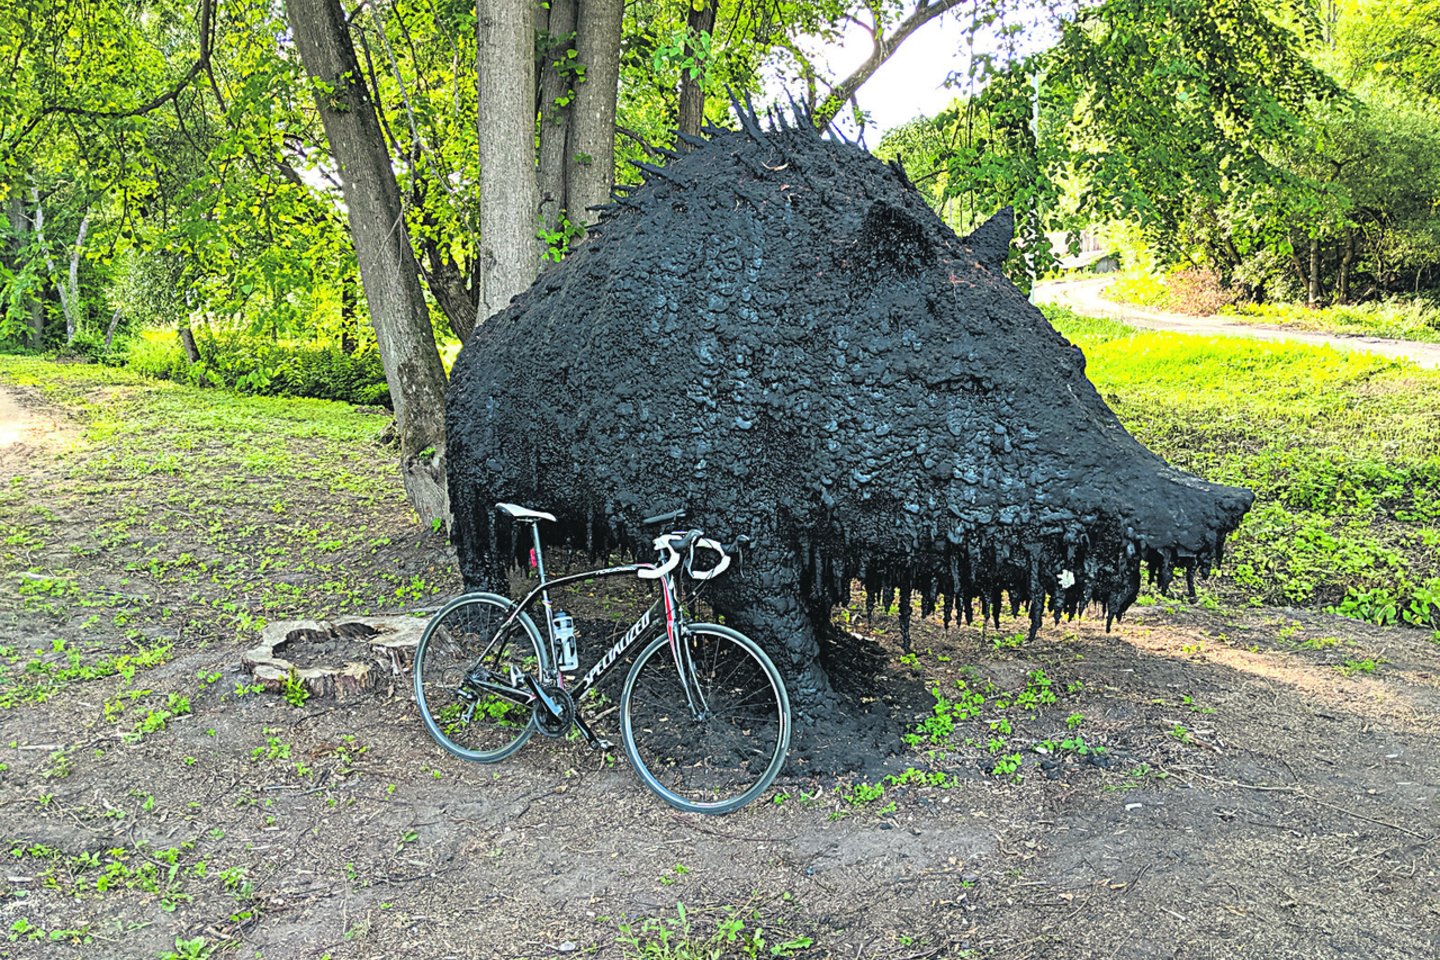 Įspūdingo dydžio šerno skulptūros netoli dviračių tako praeiviai išsigąsta.<br>L.Babrausko nuotr.